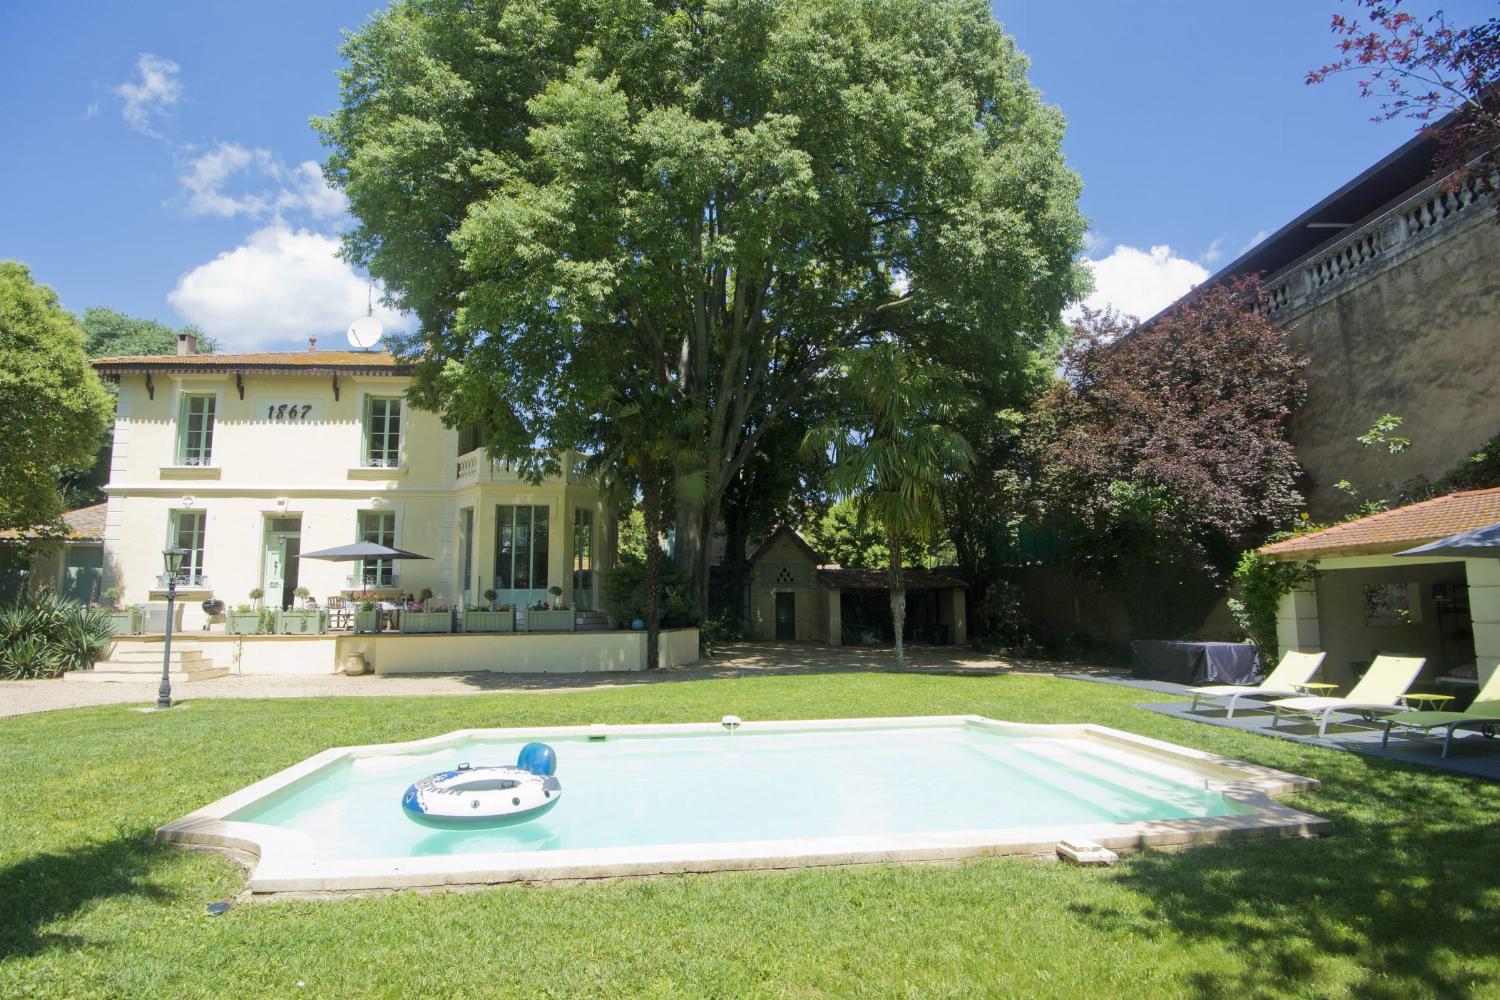 Location maison dans le sud de la France avec piscine privée chauffée